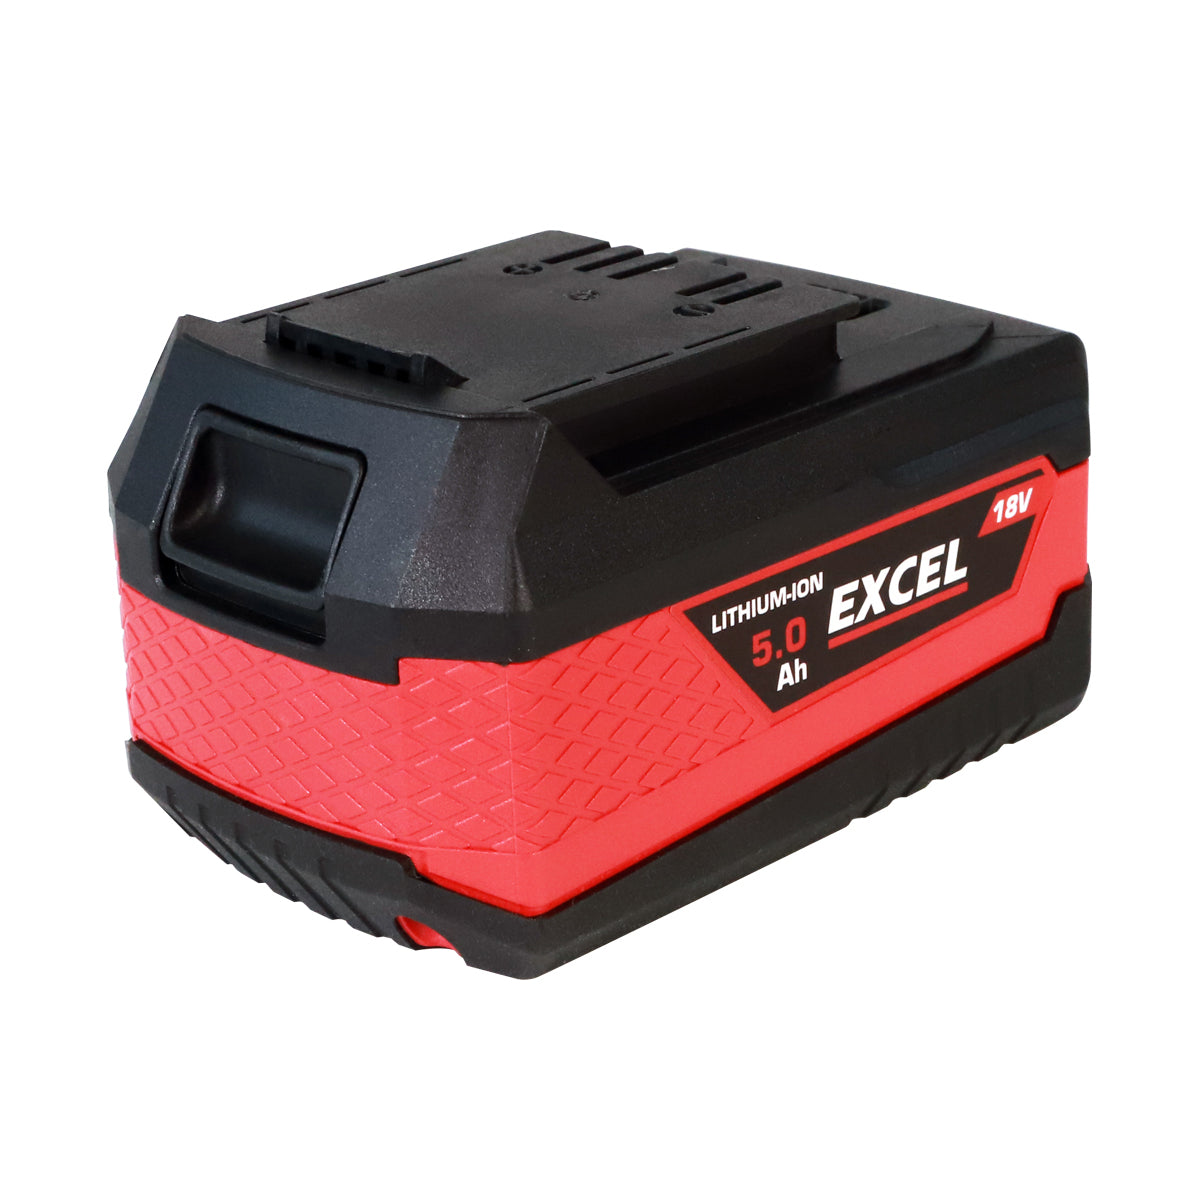 Excel 18V Leaf Blower & Hedge Trimmer 2 x 5.0Ah Batteries & Charger EXL14997